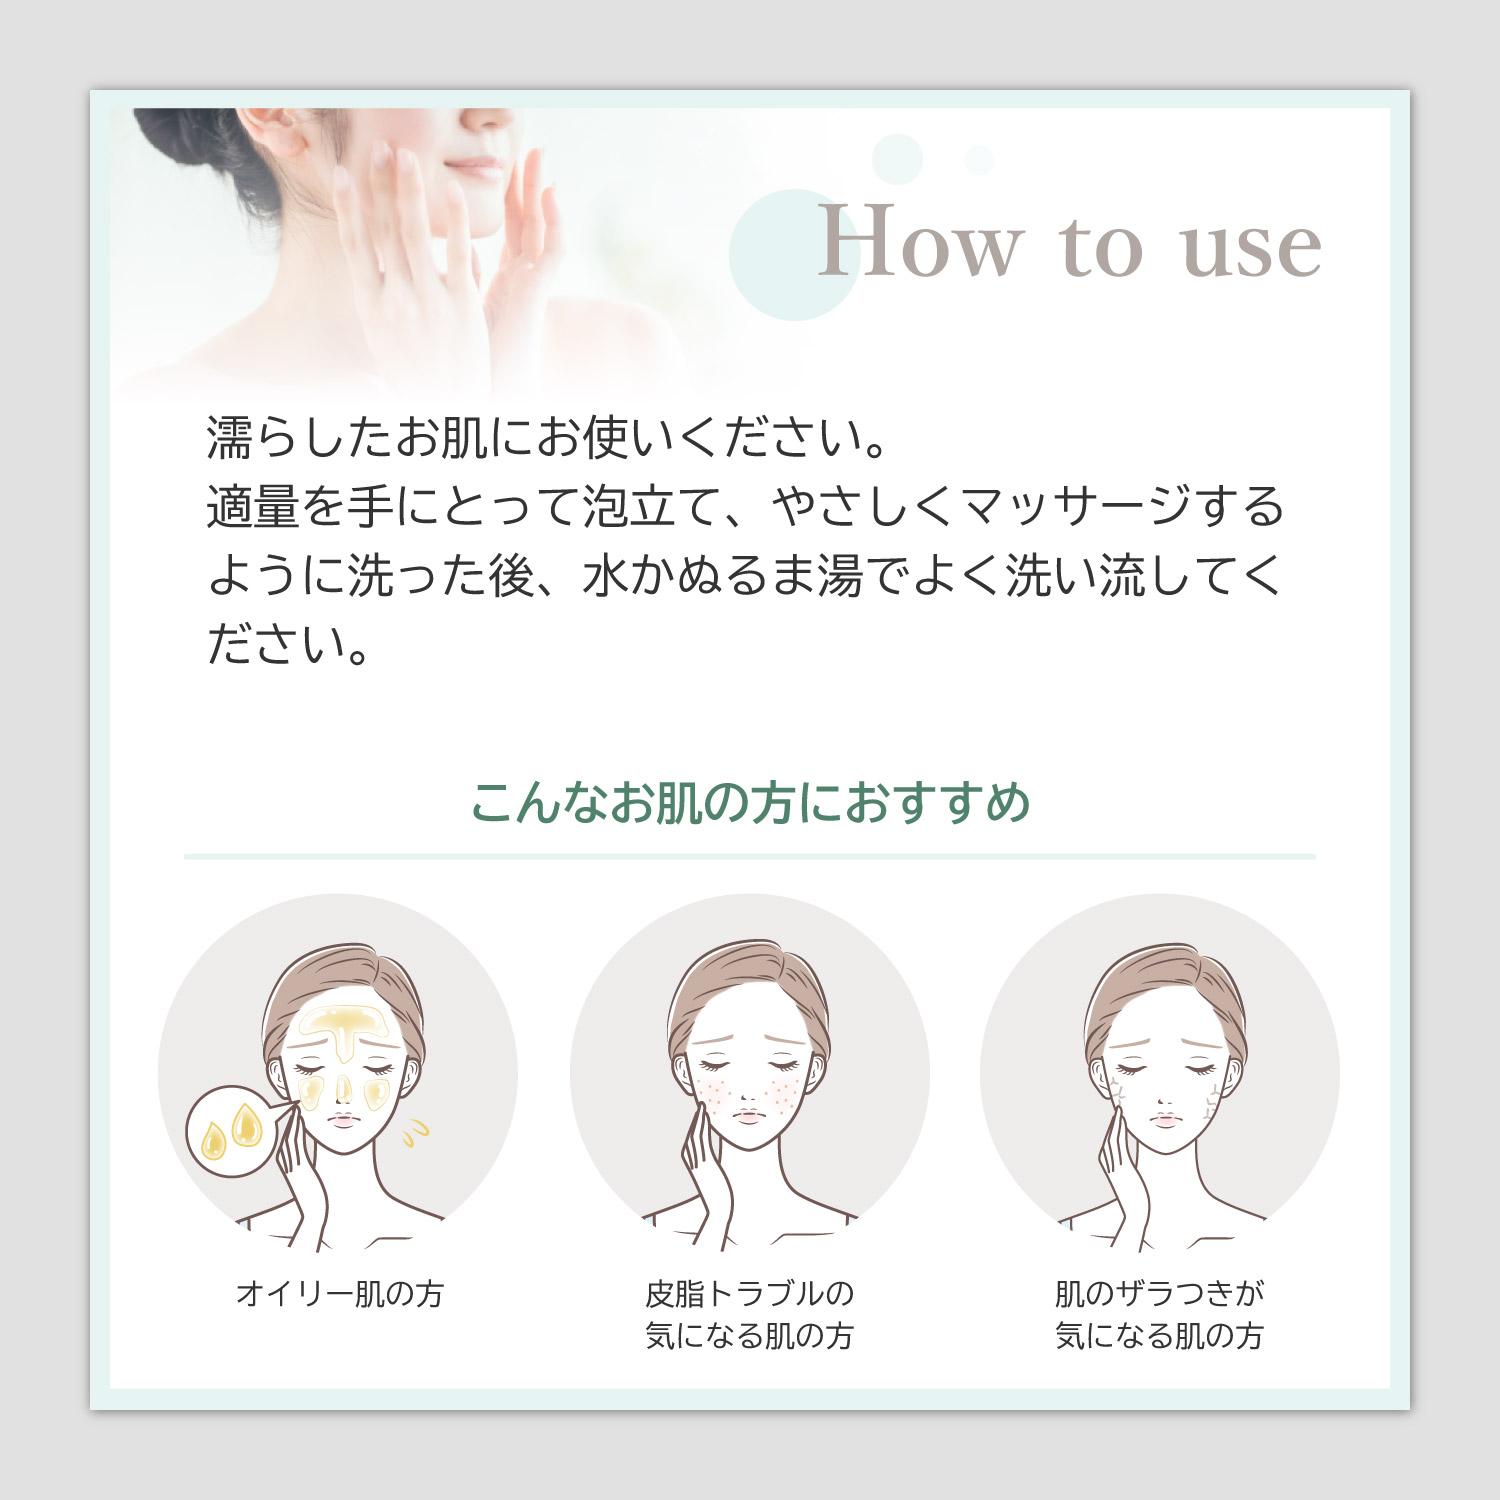 【How to use】濡らしたお肌にお使いください。適量を手にとって泡立て、やさしくマッサージするように洗った後、水かぬるま湯でよく洗い流してください。